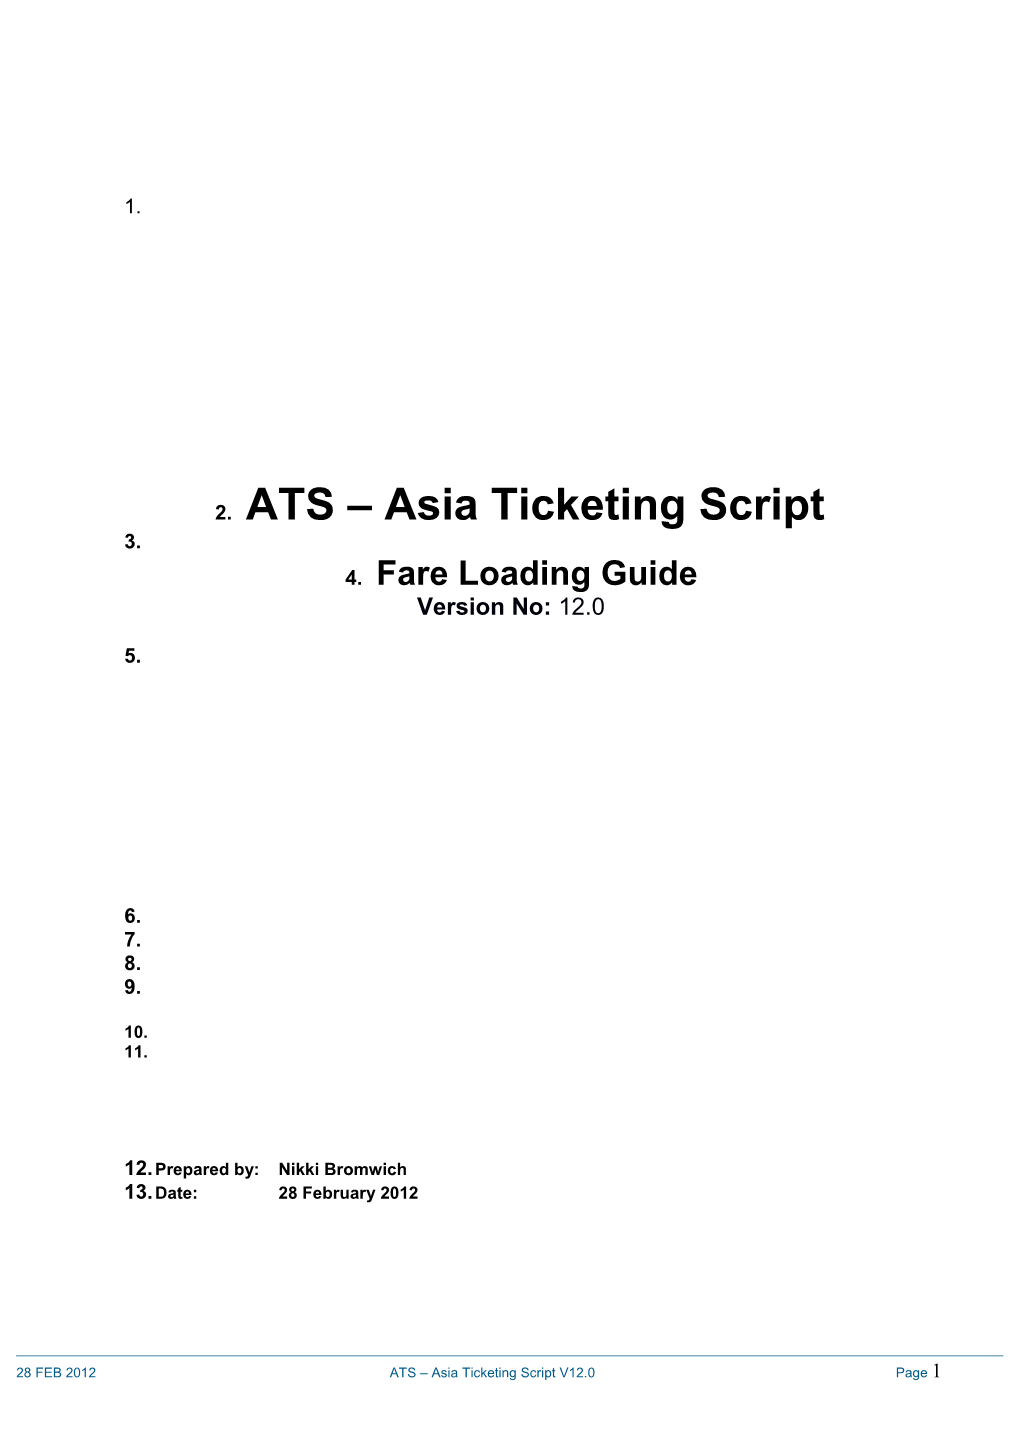 ATS Fare Loading Guide 12.0